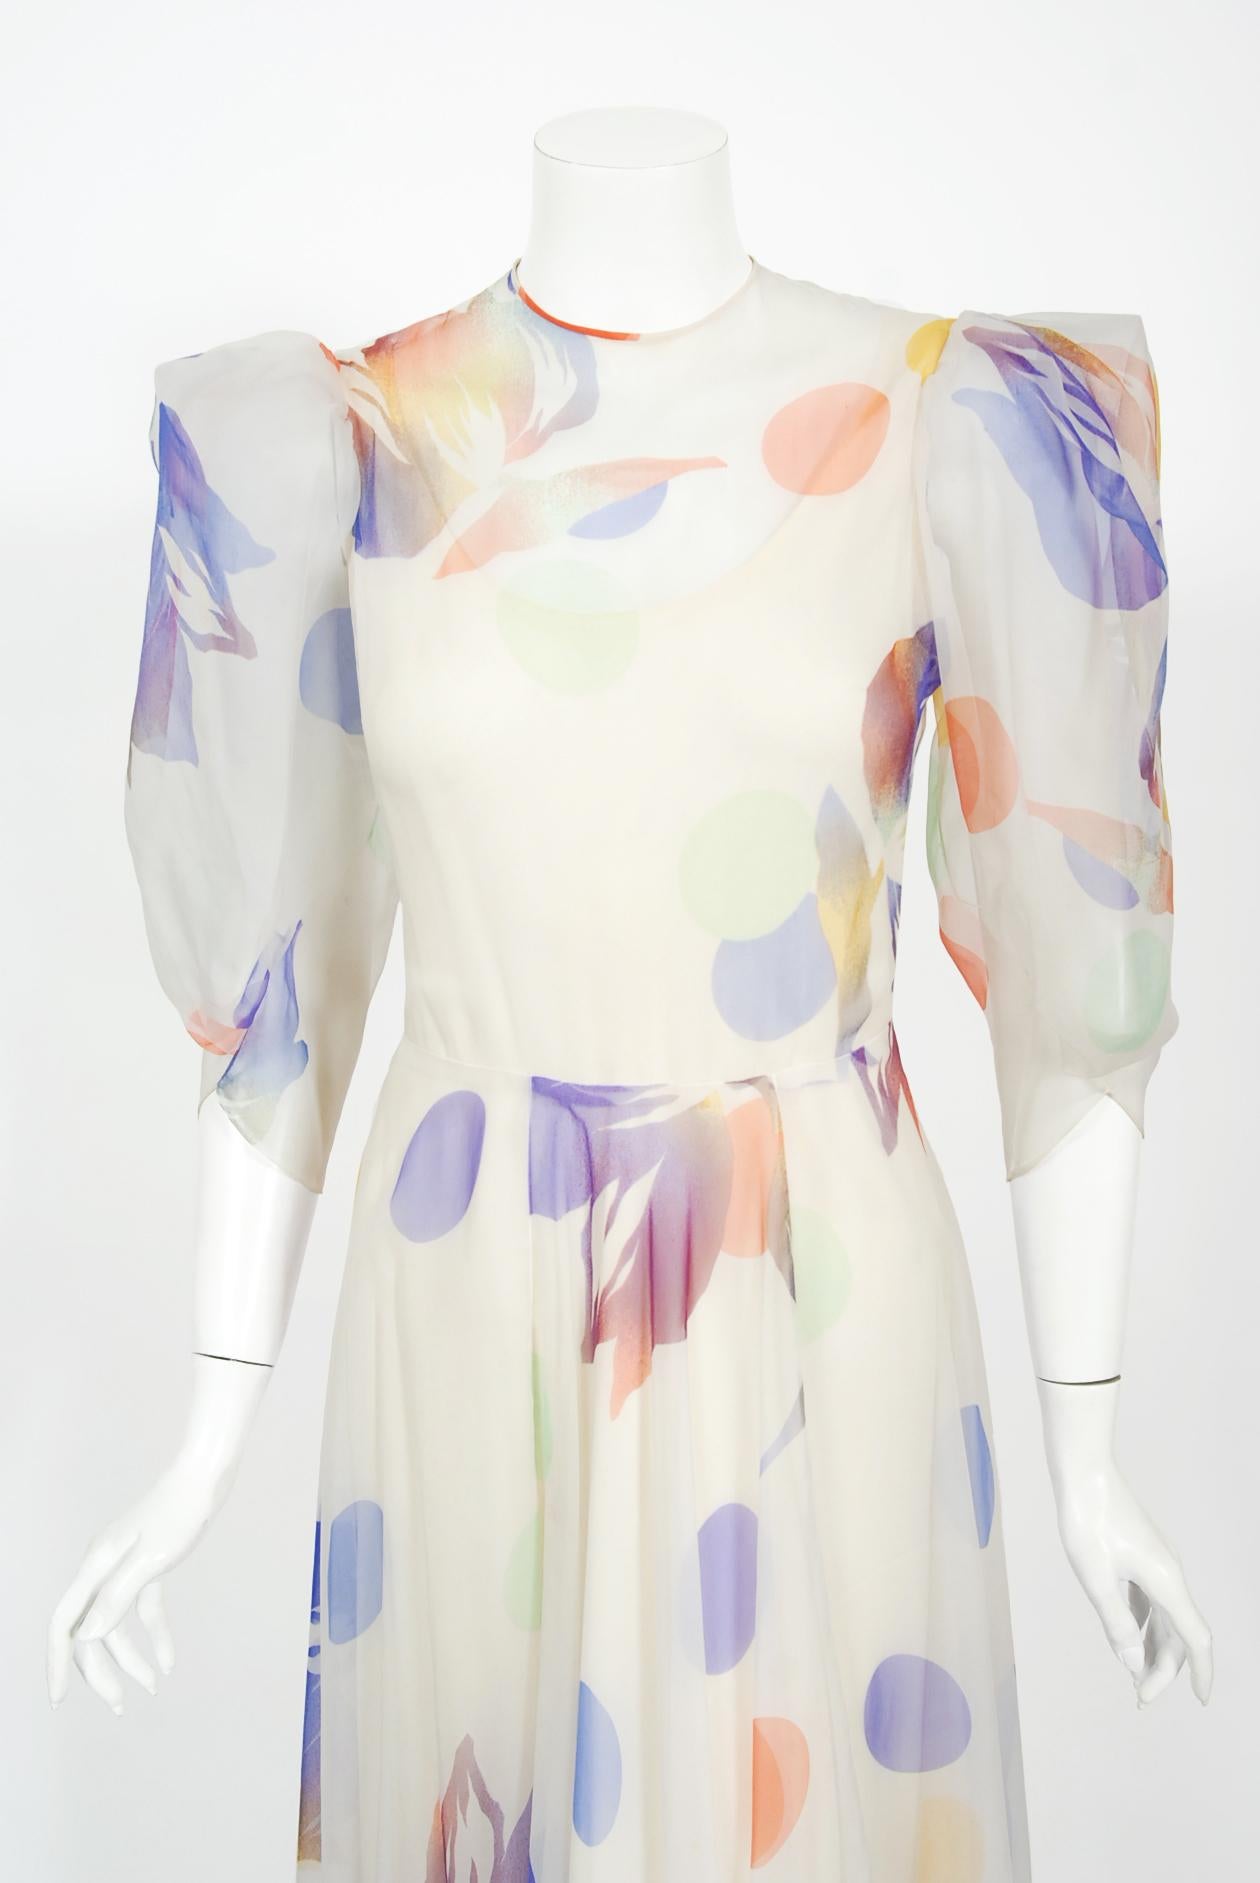 Une robe magique en mousseline de soie Stavropoulos Couture à imprimé floral à pois de type aquarelle, datant de la fin des années 1970. George Stavropoulos était un créateur de mode new-yorkais connu pour ses robes drapées innovantes et ses robes